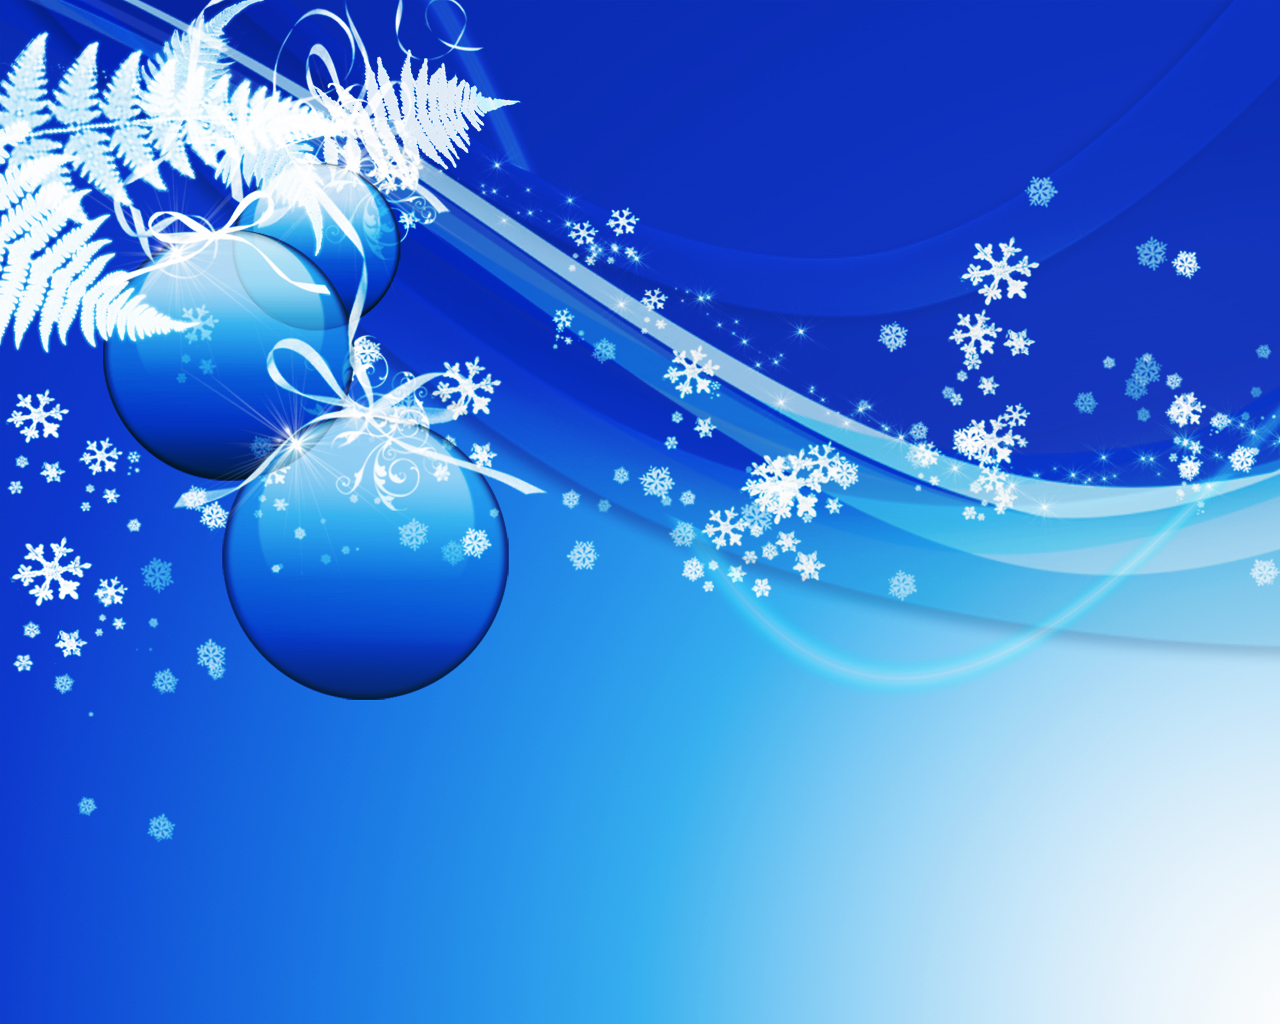 imagenes de decoracion para navidad - Las mejores ideas para decorar su árbol de Navidad Alo co